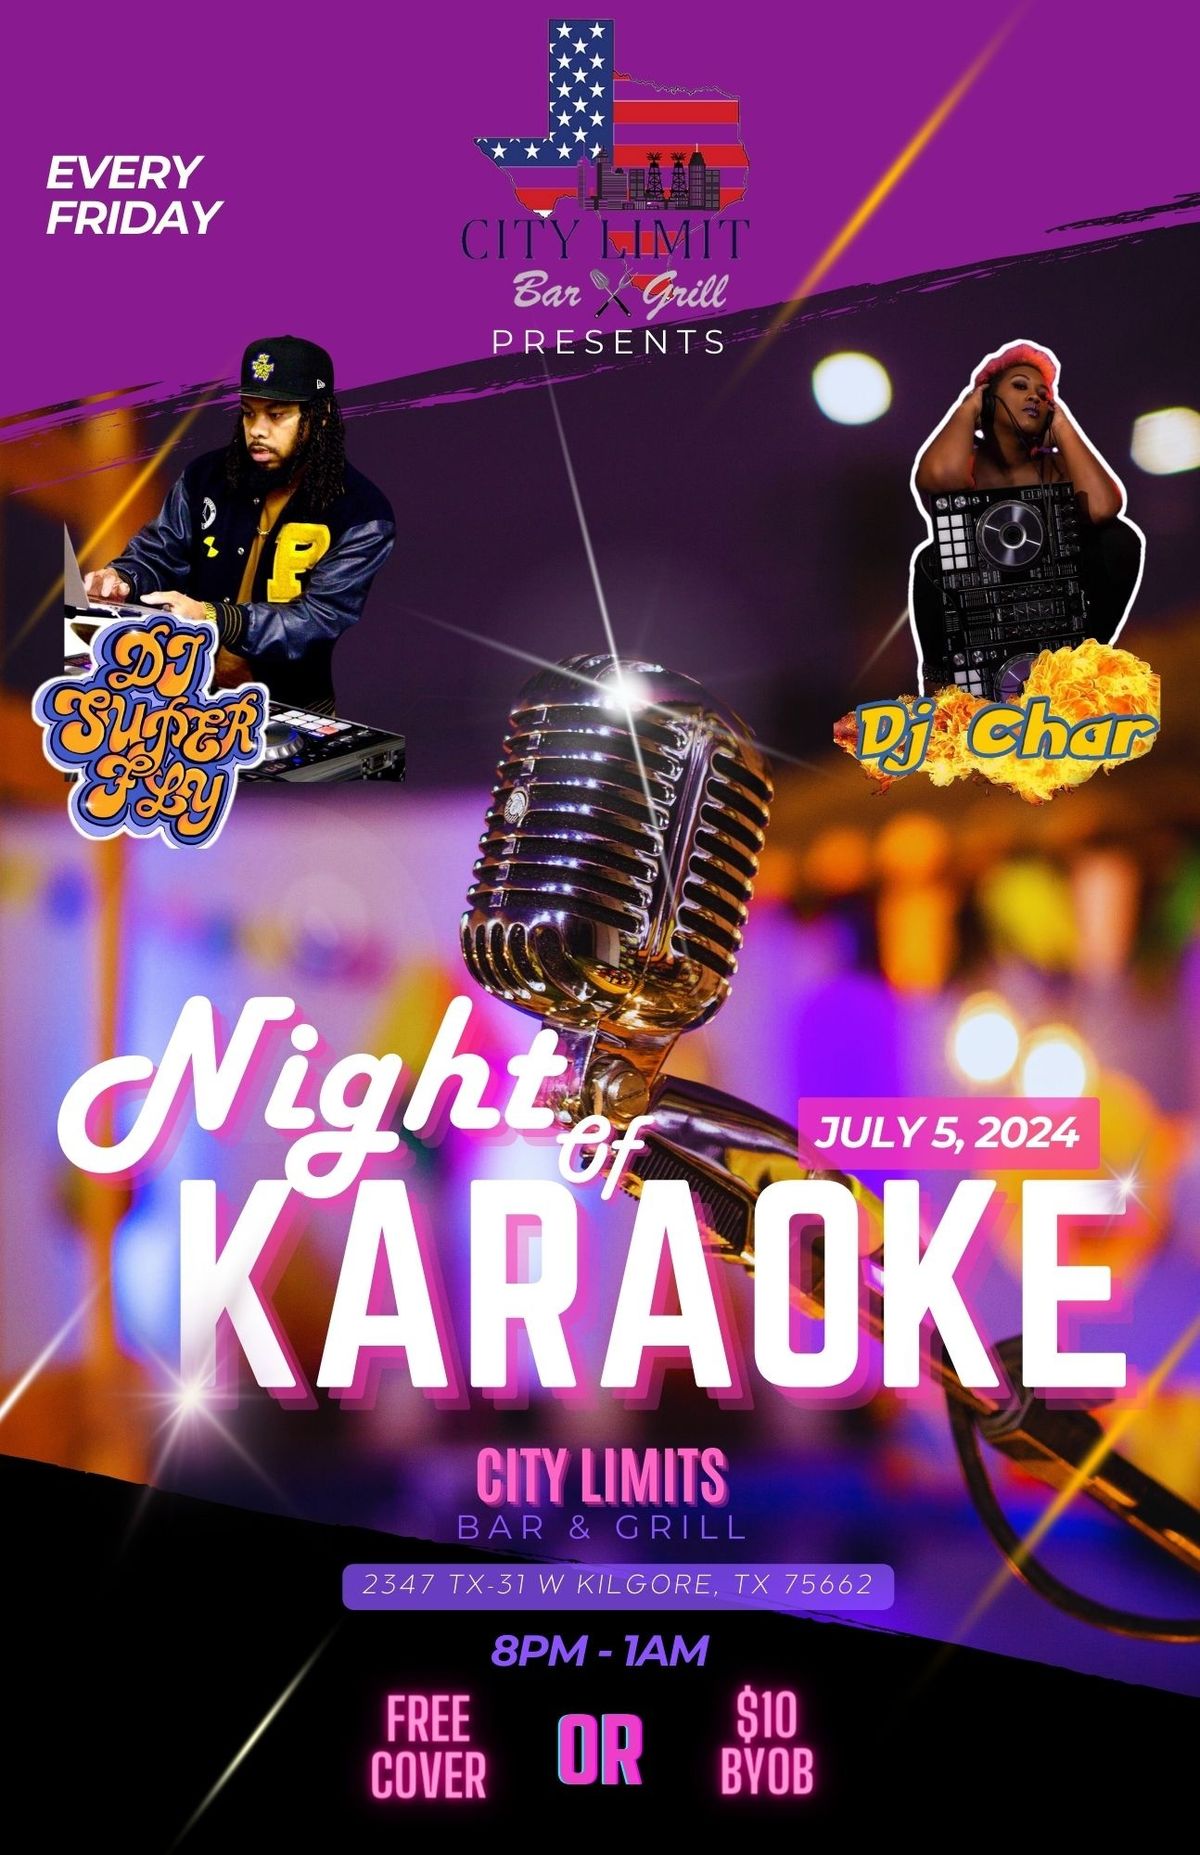 City Limits Karaoke with DJ Char & DJ Superfly